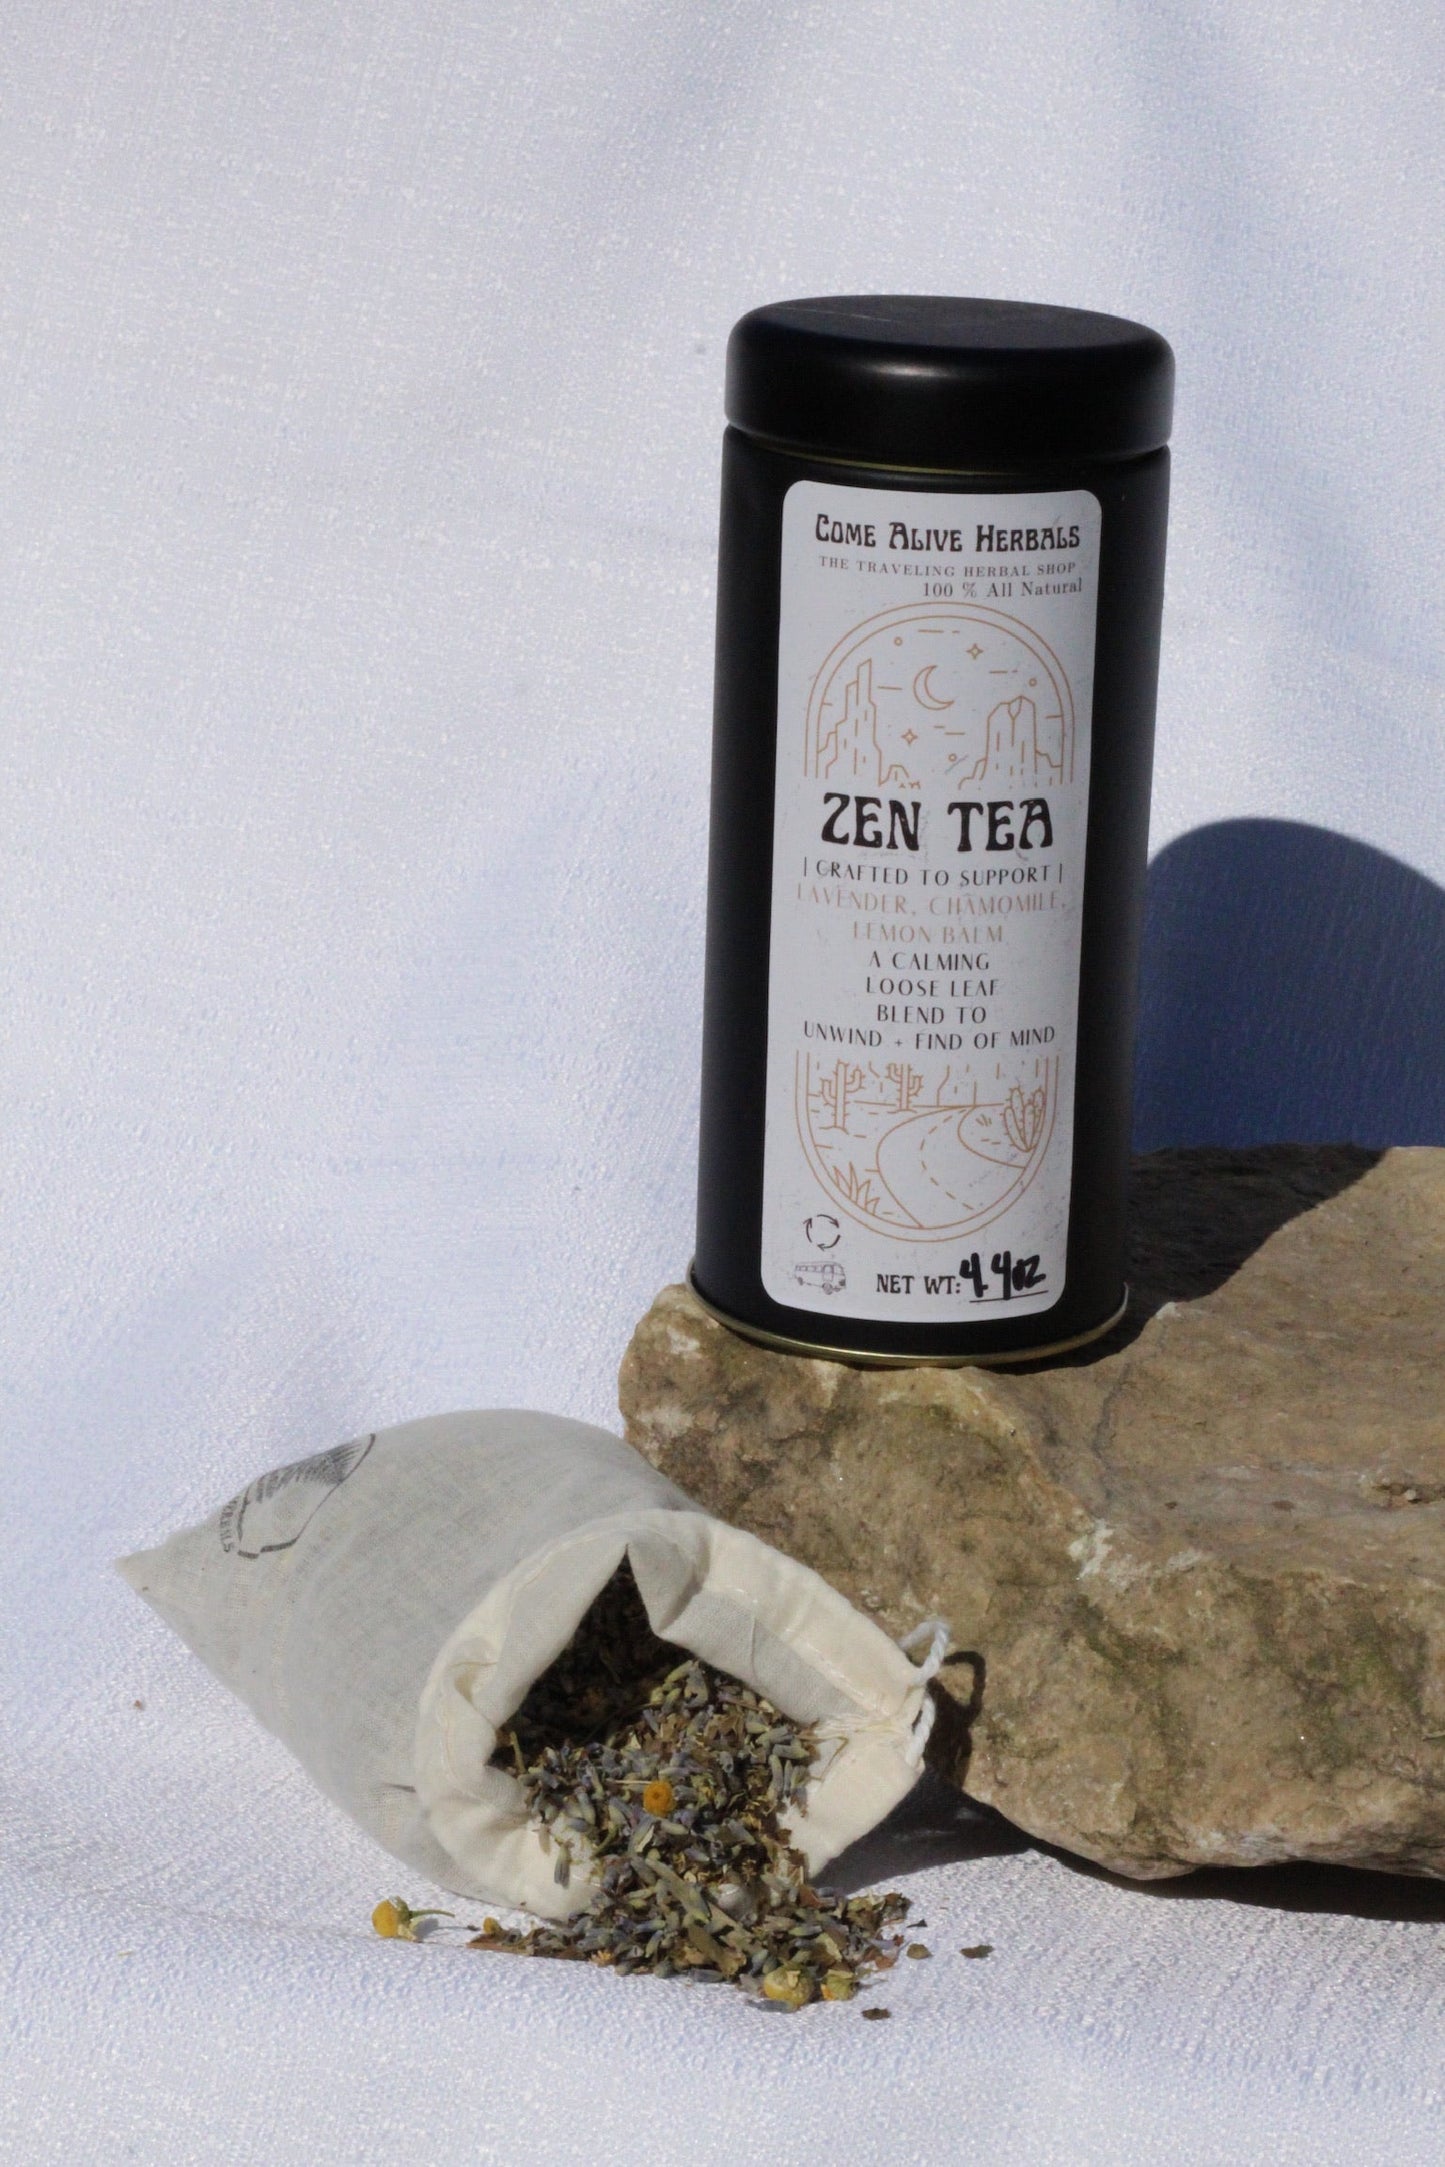 Zen Tea by Come Alive Herbals